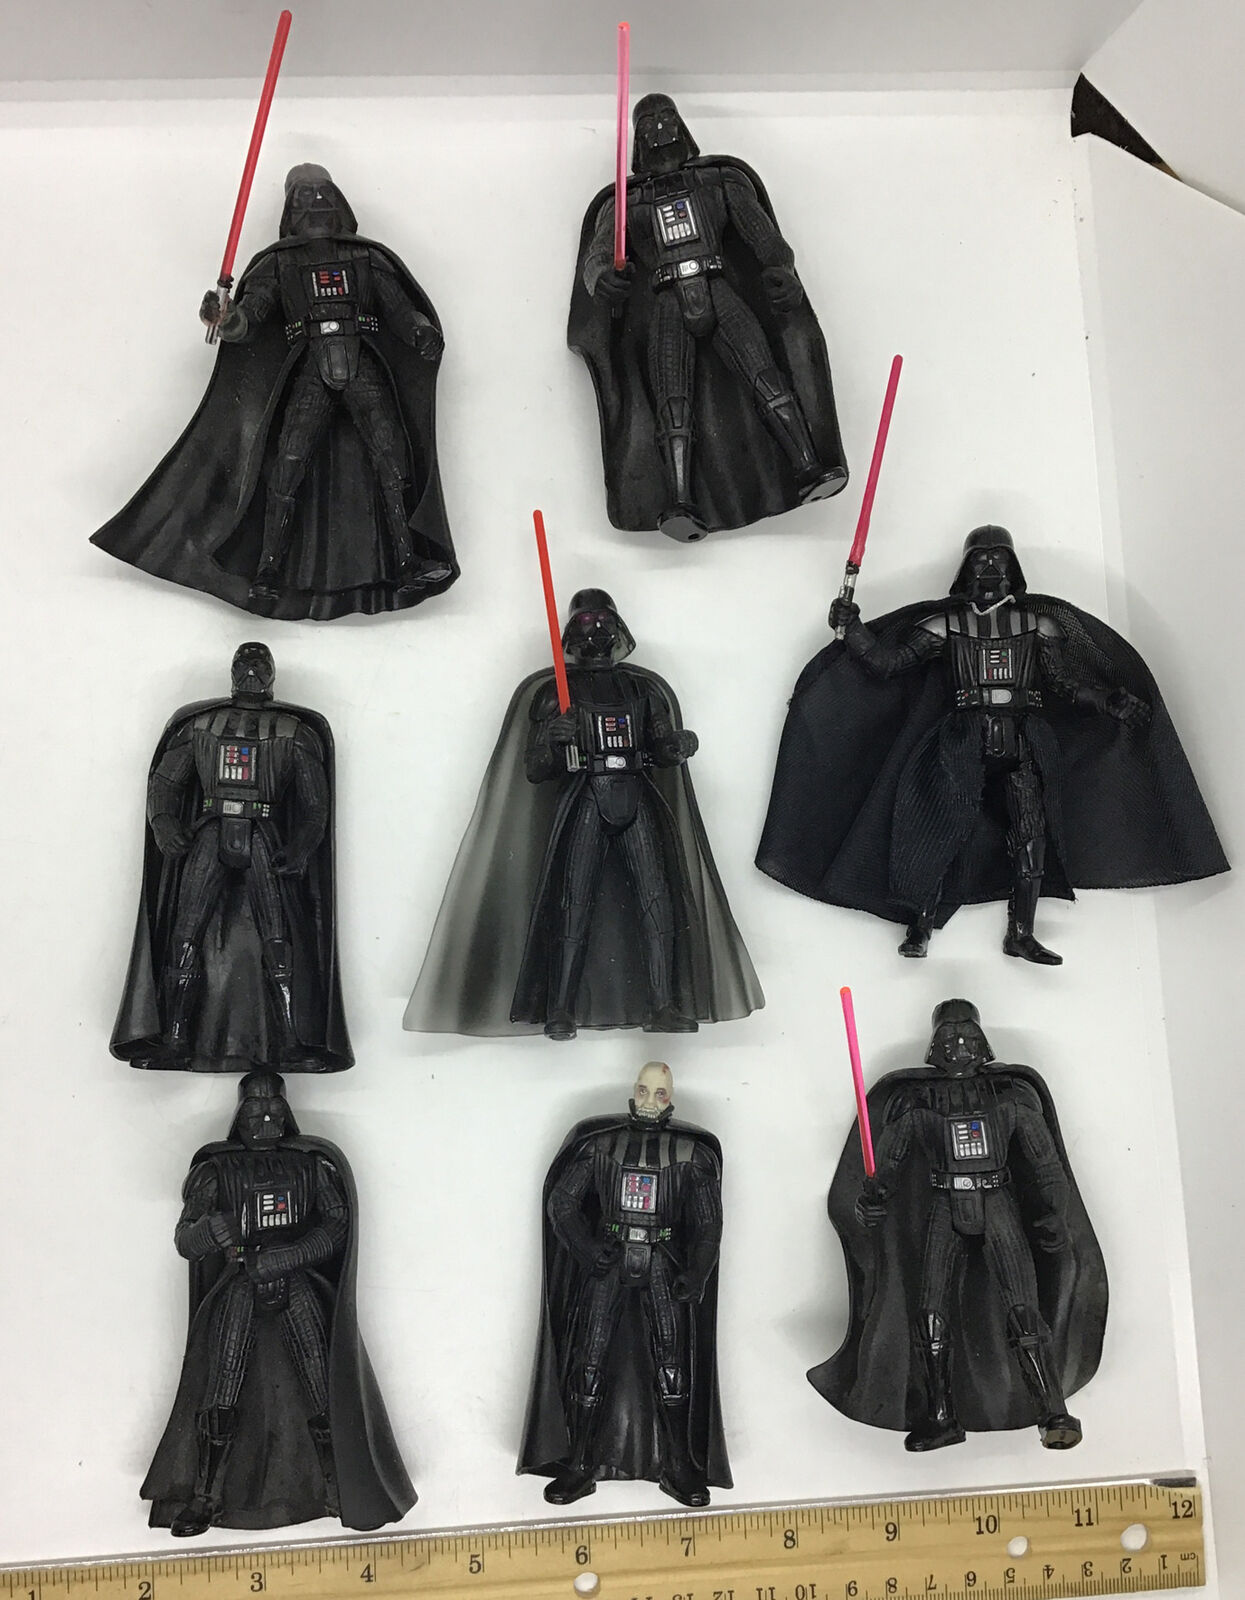 Lot of 8 Darth Vader’s LPL Figures 1995, 1996, 1997, 1999, 2001, 2001